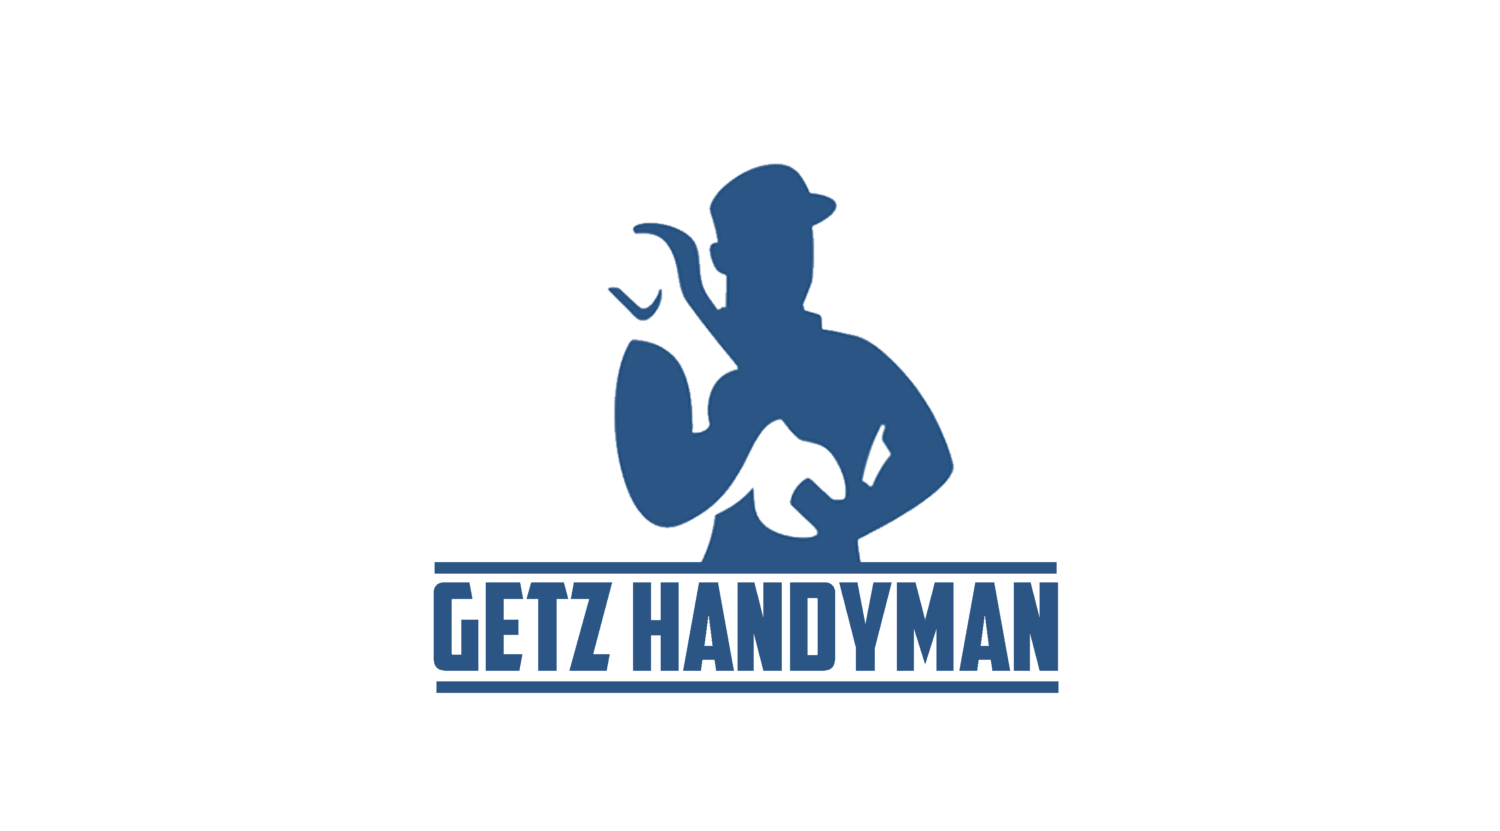 Getz-handyman-1-e1631850913377-1500x831.png